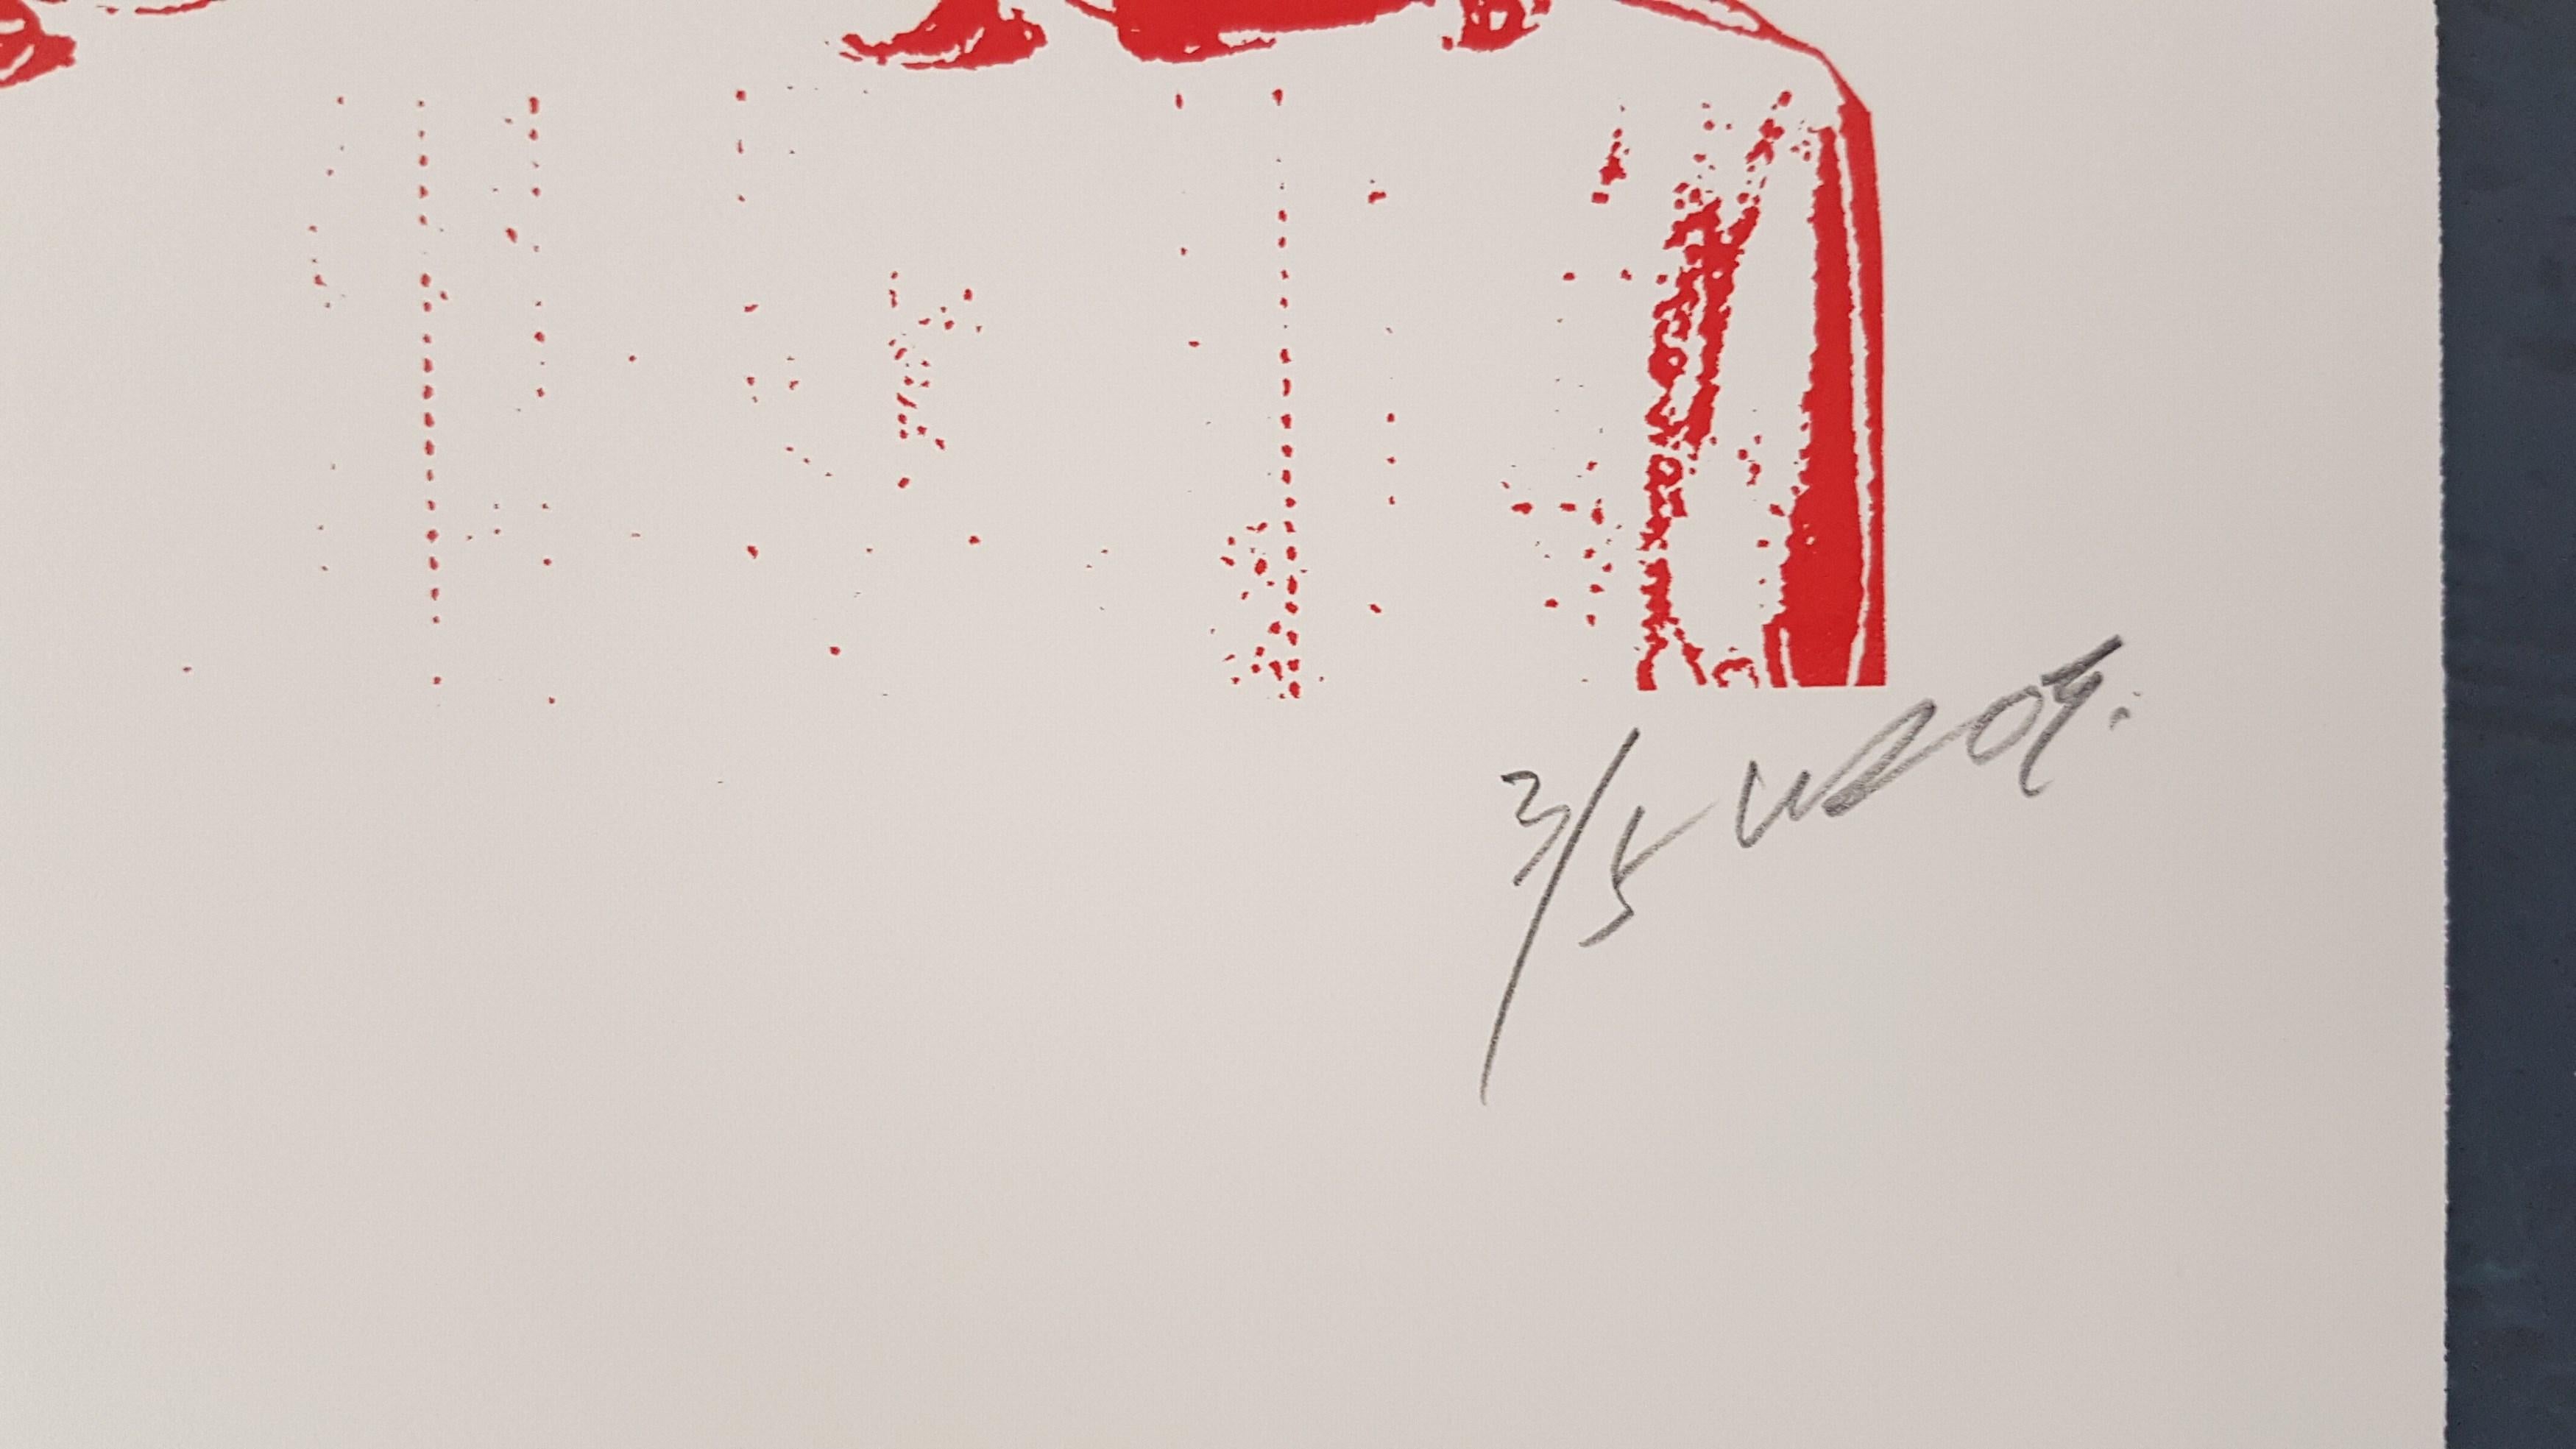 Unbekannt (im Stil von Barry McGee)
Judas und Jesus (Das letzte Abendmahl)
Lithographie
Auflage: 4/8
Signiert, nummeriert, datiert und beschriftet vom Künstler
Größe: 30 x 22,5 Zoll
Gallery COA bereitgestellt

Barry McGee wurde 1966 in San